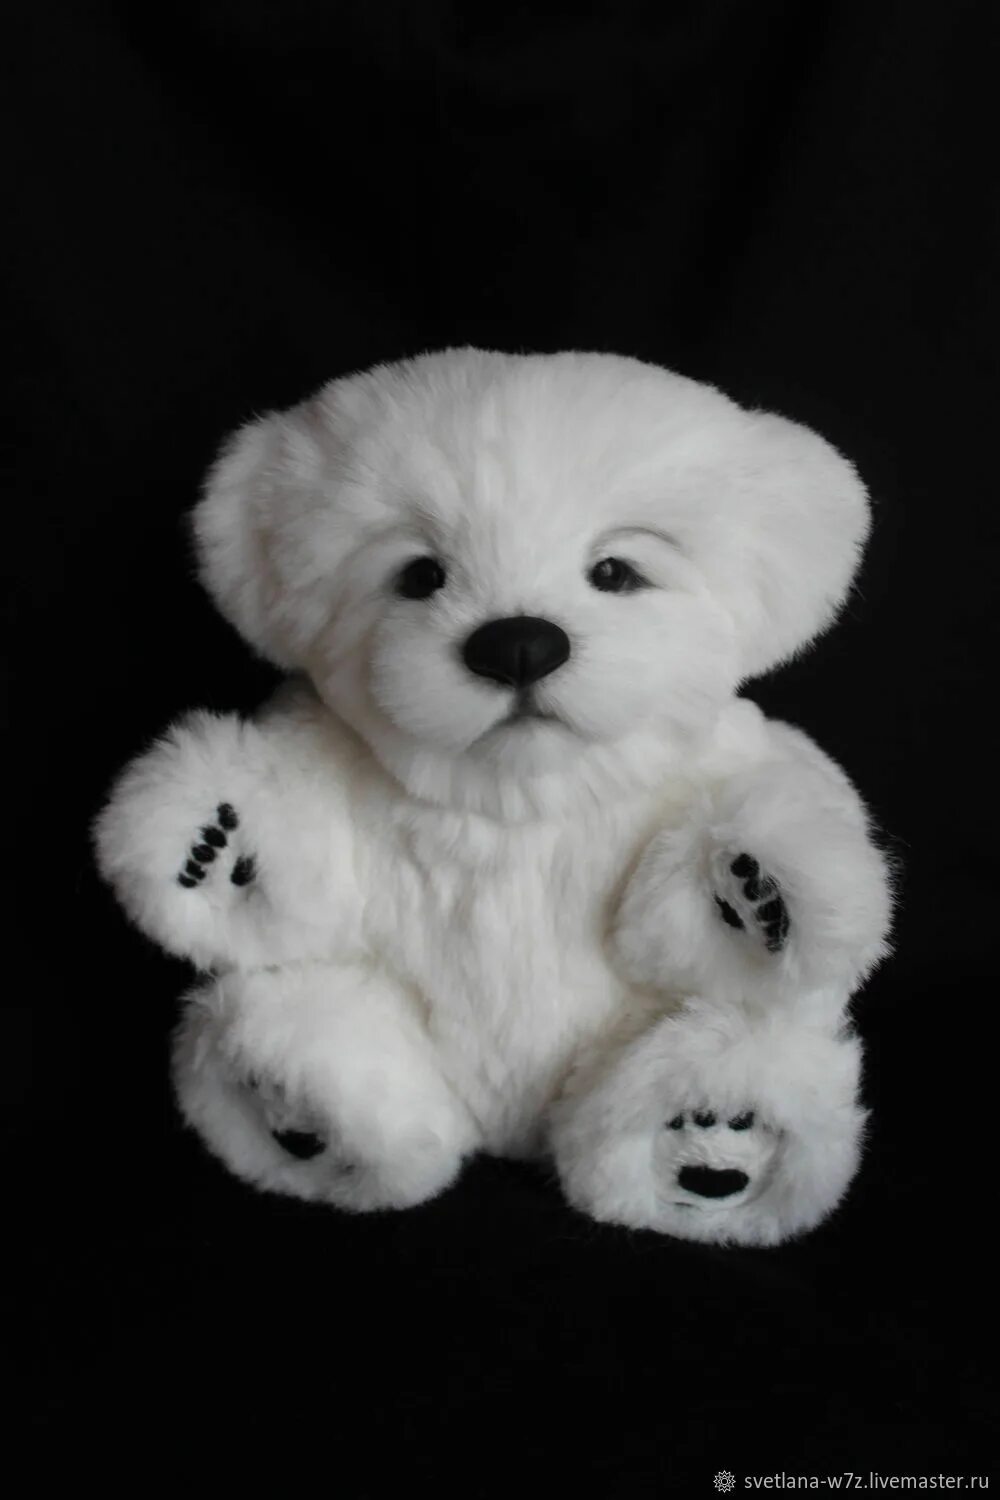 Тедди белый. Мишка Тедди белый. Белый плюшевый мишка маленький. Медвежонок снежок. Мягкая игрушка снежок Медвежонок.